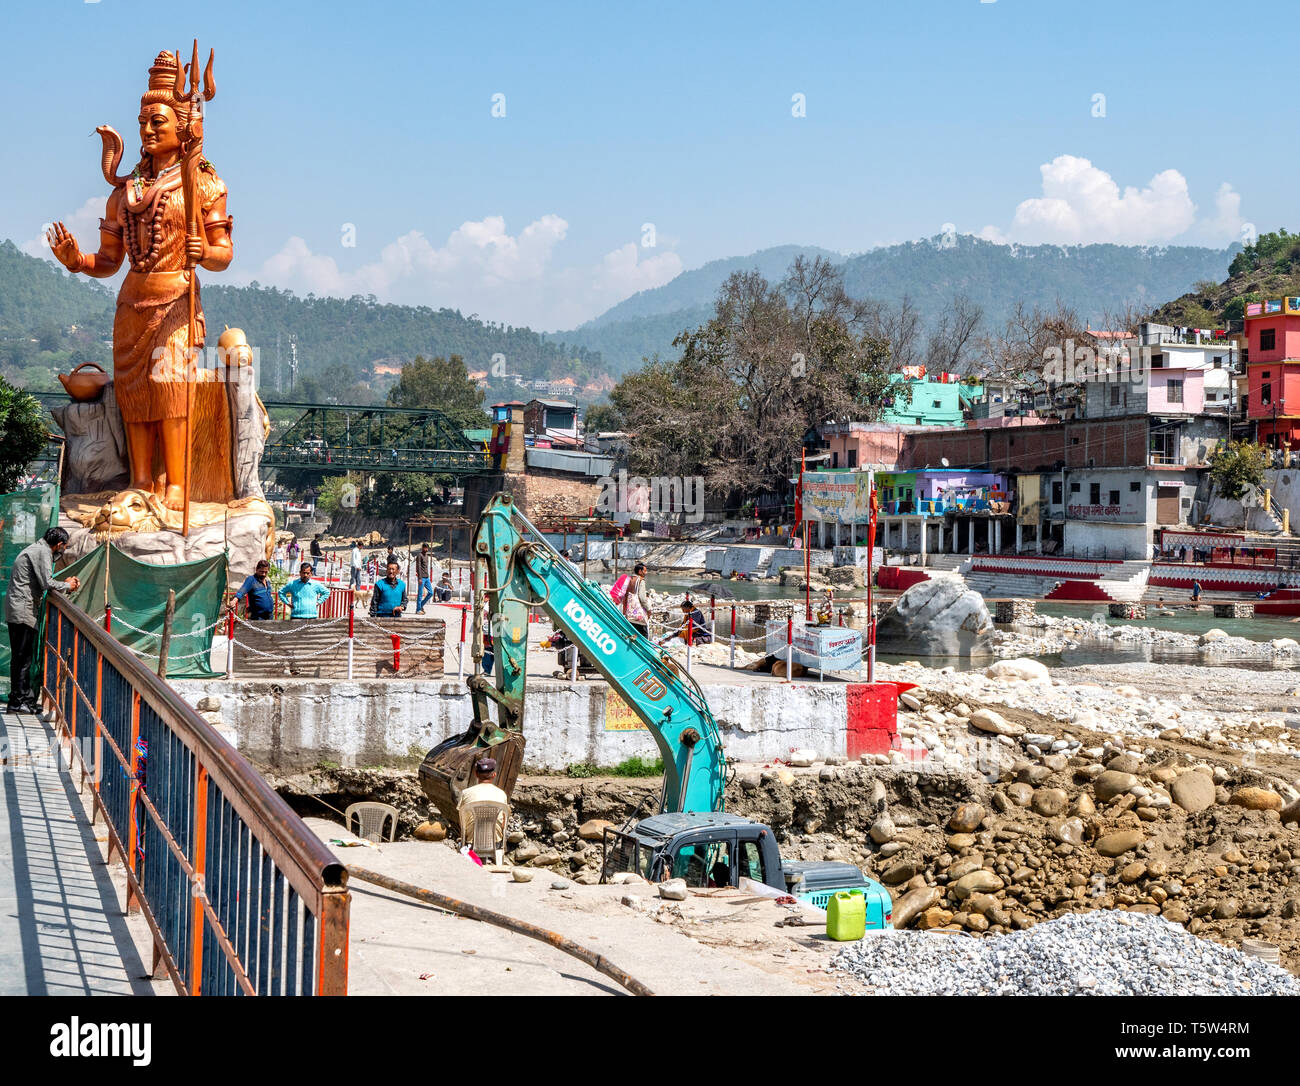 Lavori di costruzione attorno all'enorme statua del signore Shiva o Mahadeva il dio indù al tempio Bagnath Bageshwar in India del Nord Foto Stock